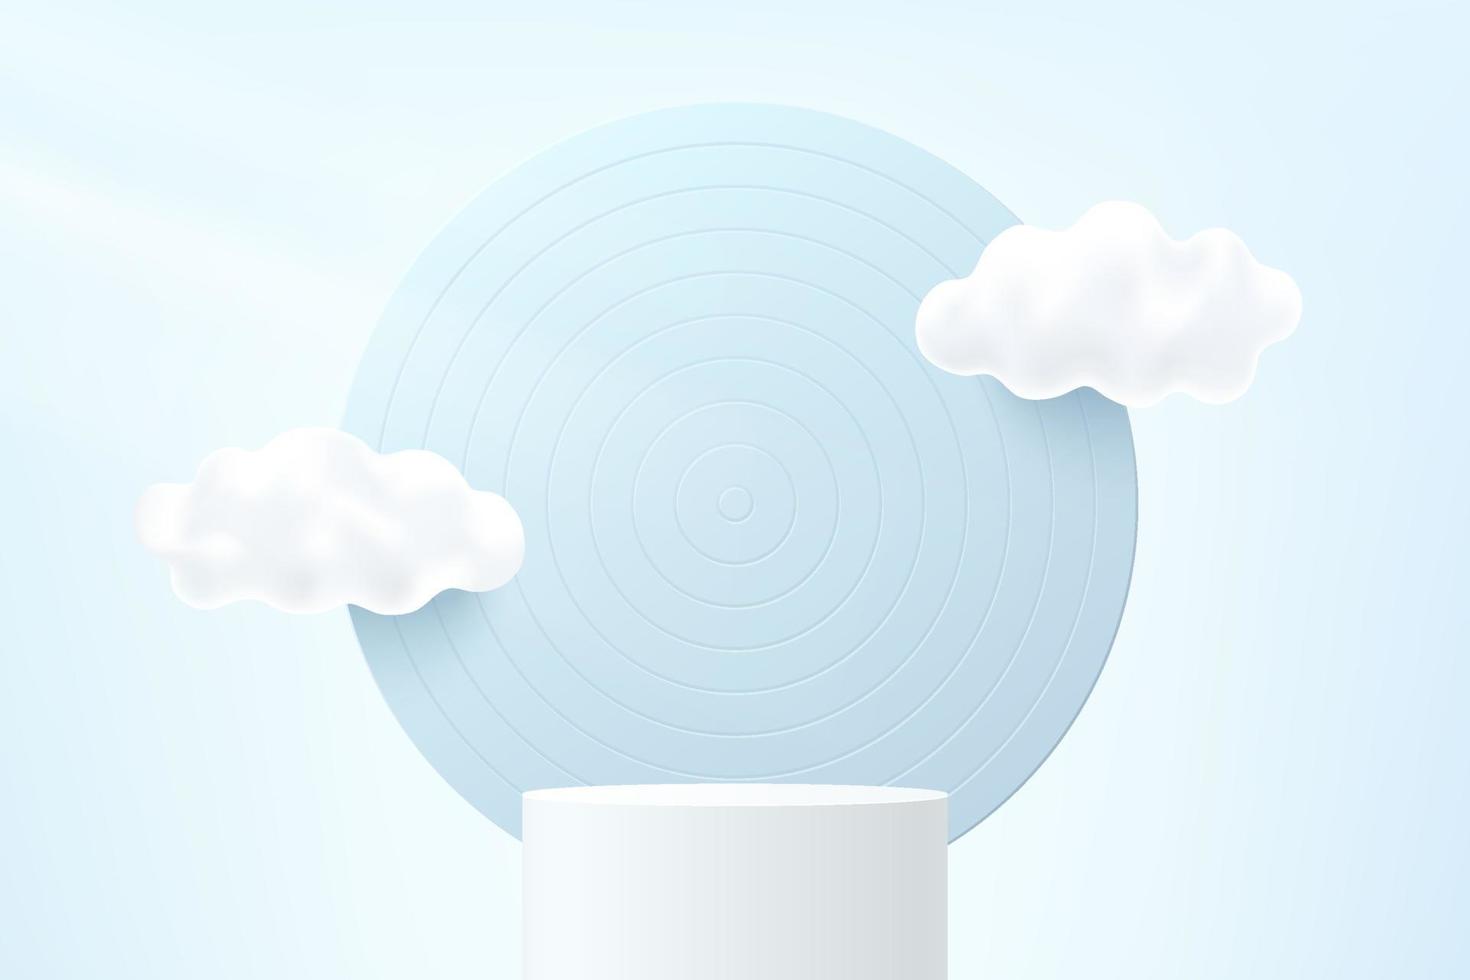 piedistallo cilindro 3d bianco astratto o podio con sfondo circolare e nuvole bianche che volano in cielo. scena minima blu pastello per la presentazione del prodotto. piattaforma di rendering geometrico vettoriale